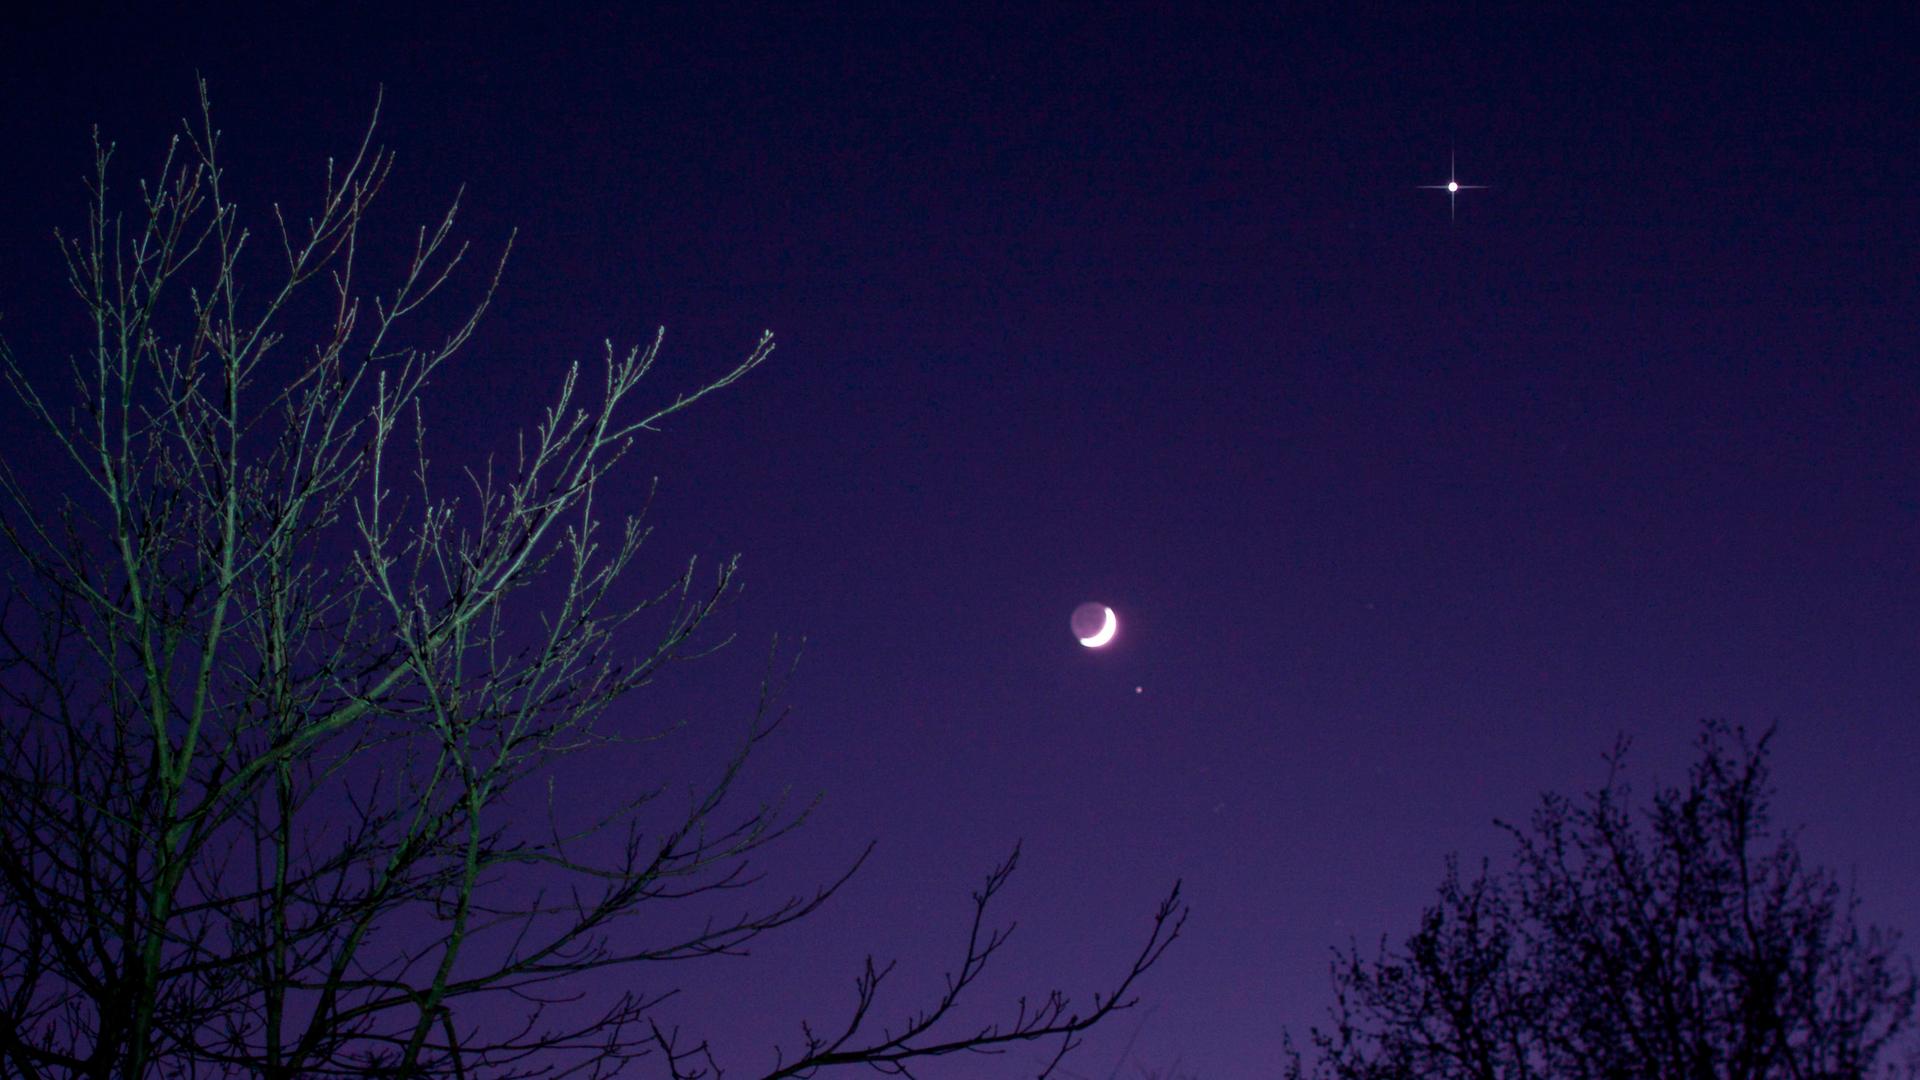 Violett scheinender Nachthimmel, auf dem der Mond und einige Sterne zu erkennen sind. Im Vordergrund dunkle Bäume.